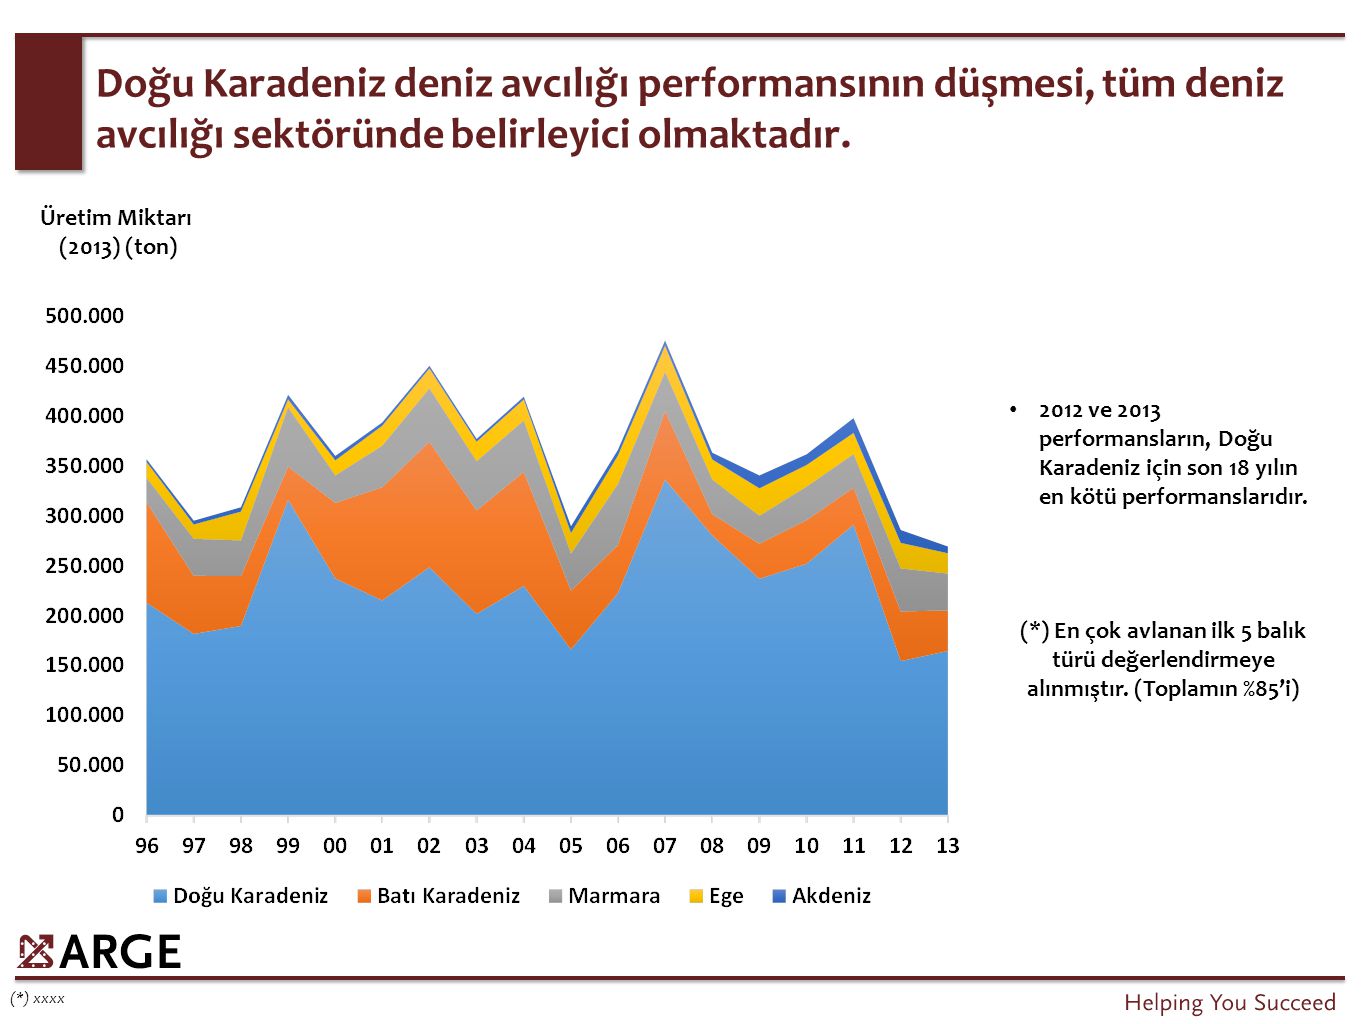 Yetiştiricilik alanında Muğla %33’lük payı ile liderdir, onu %15’lik payı ile İzmir izlemektedir.